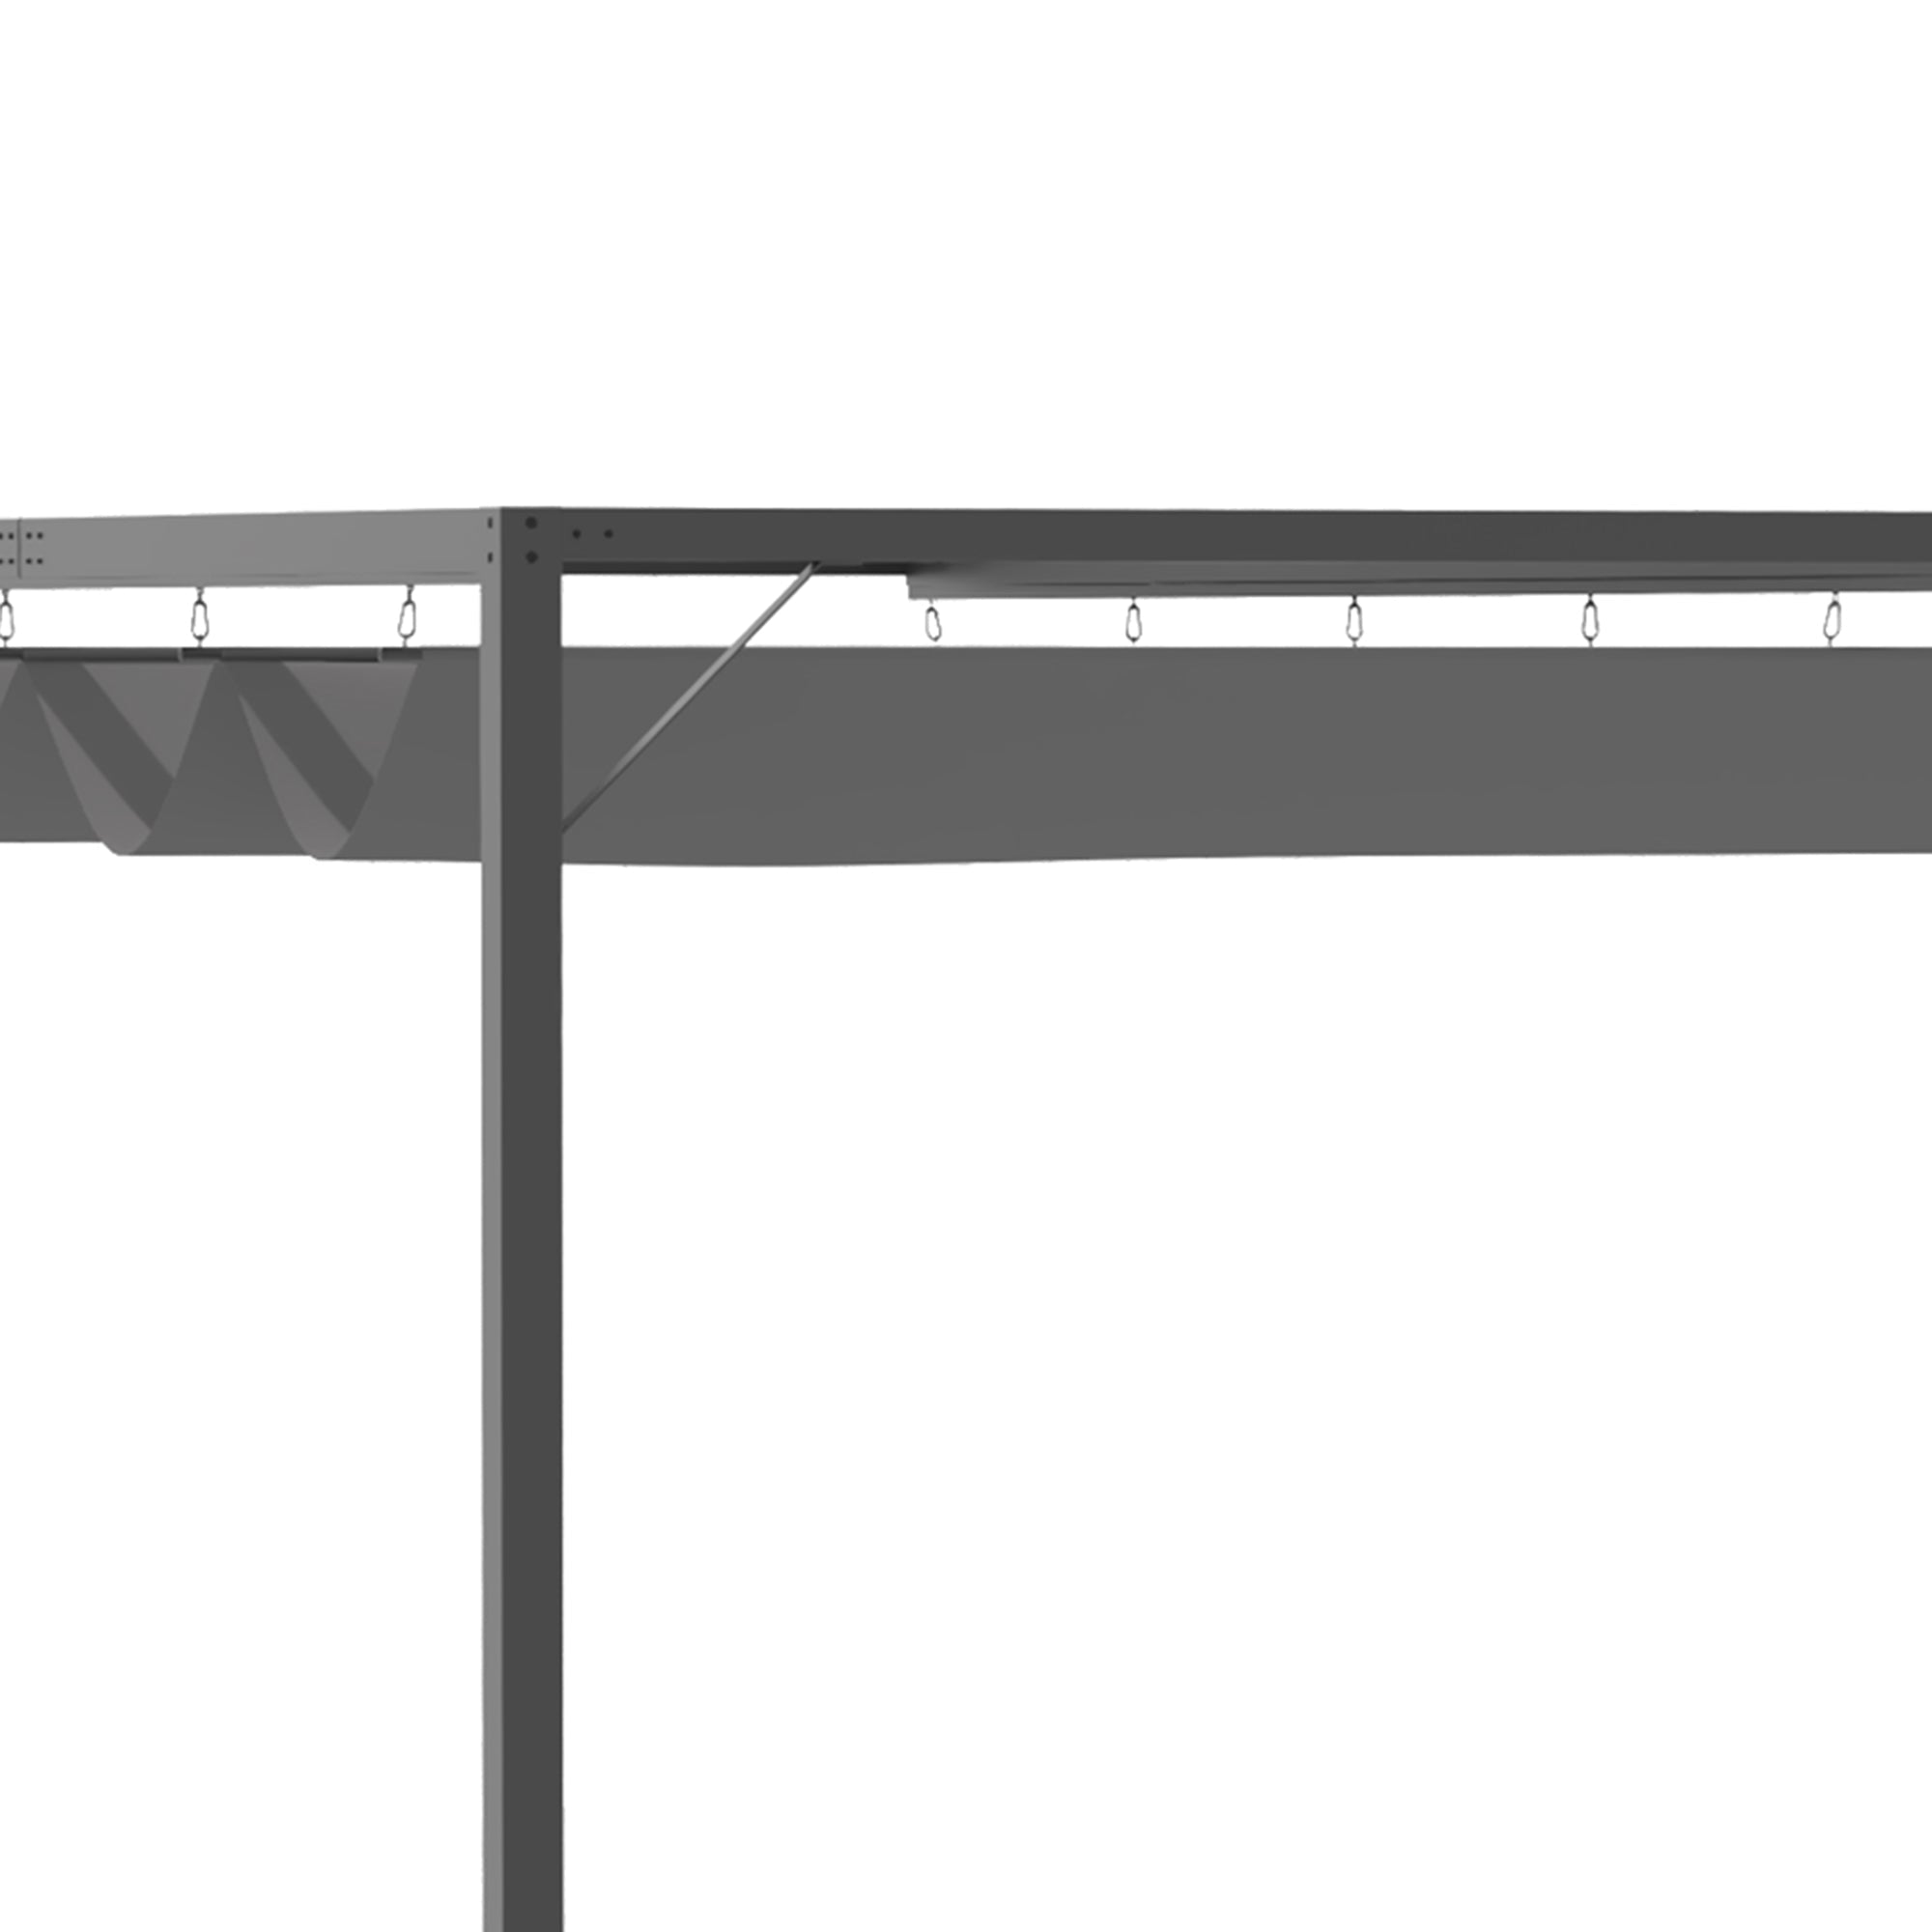 Pergola Retractable Canopy Wall Mounted Gazebo Shelter Sun Shade, Grey - TovaHaus